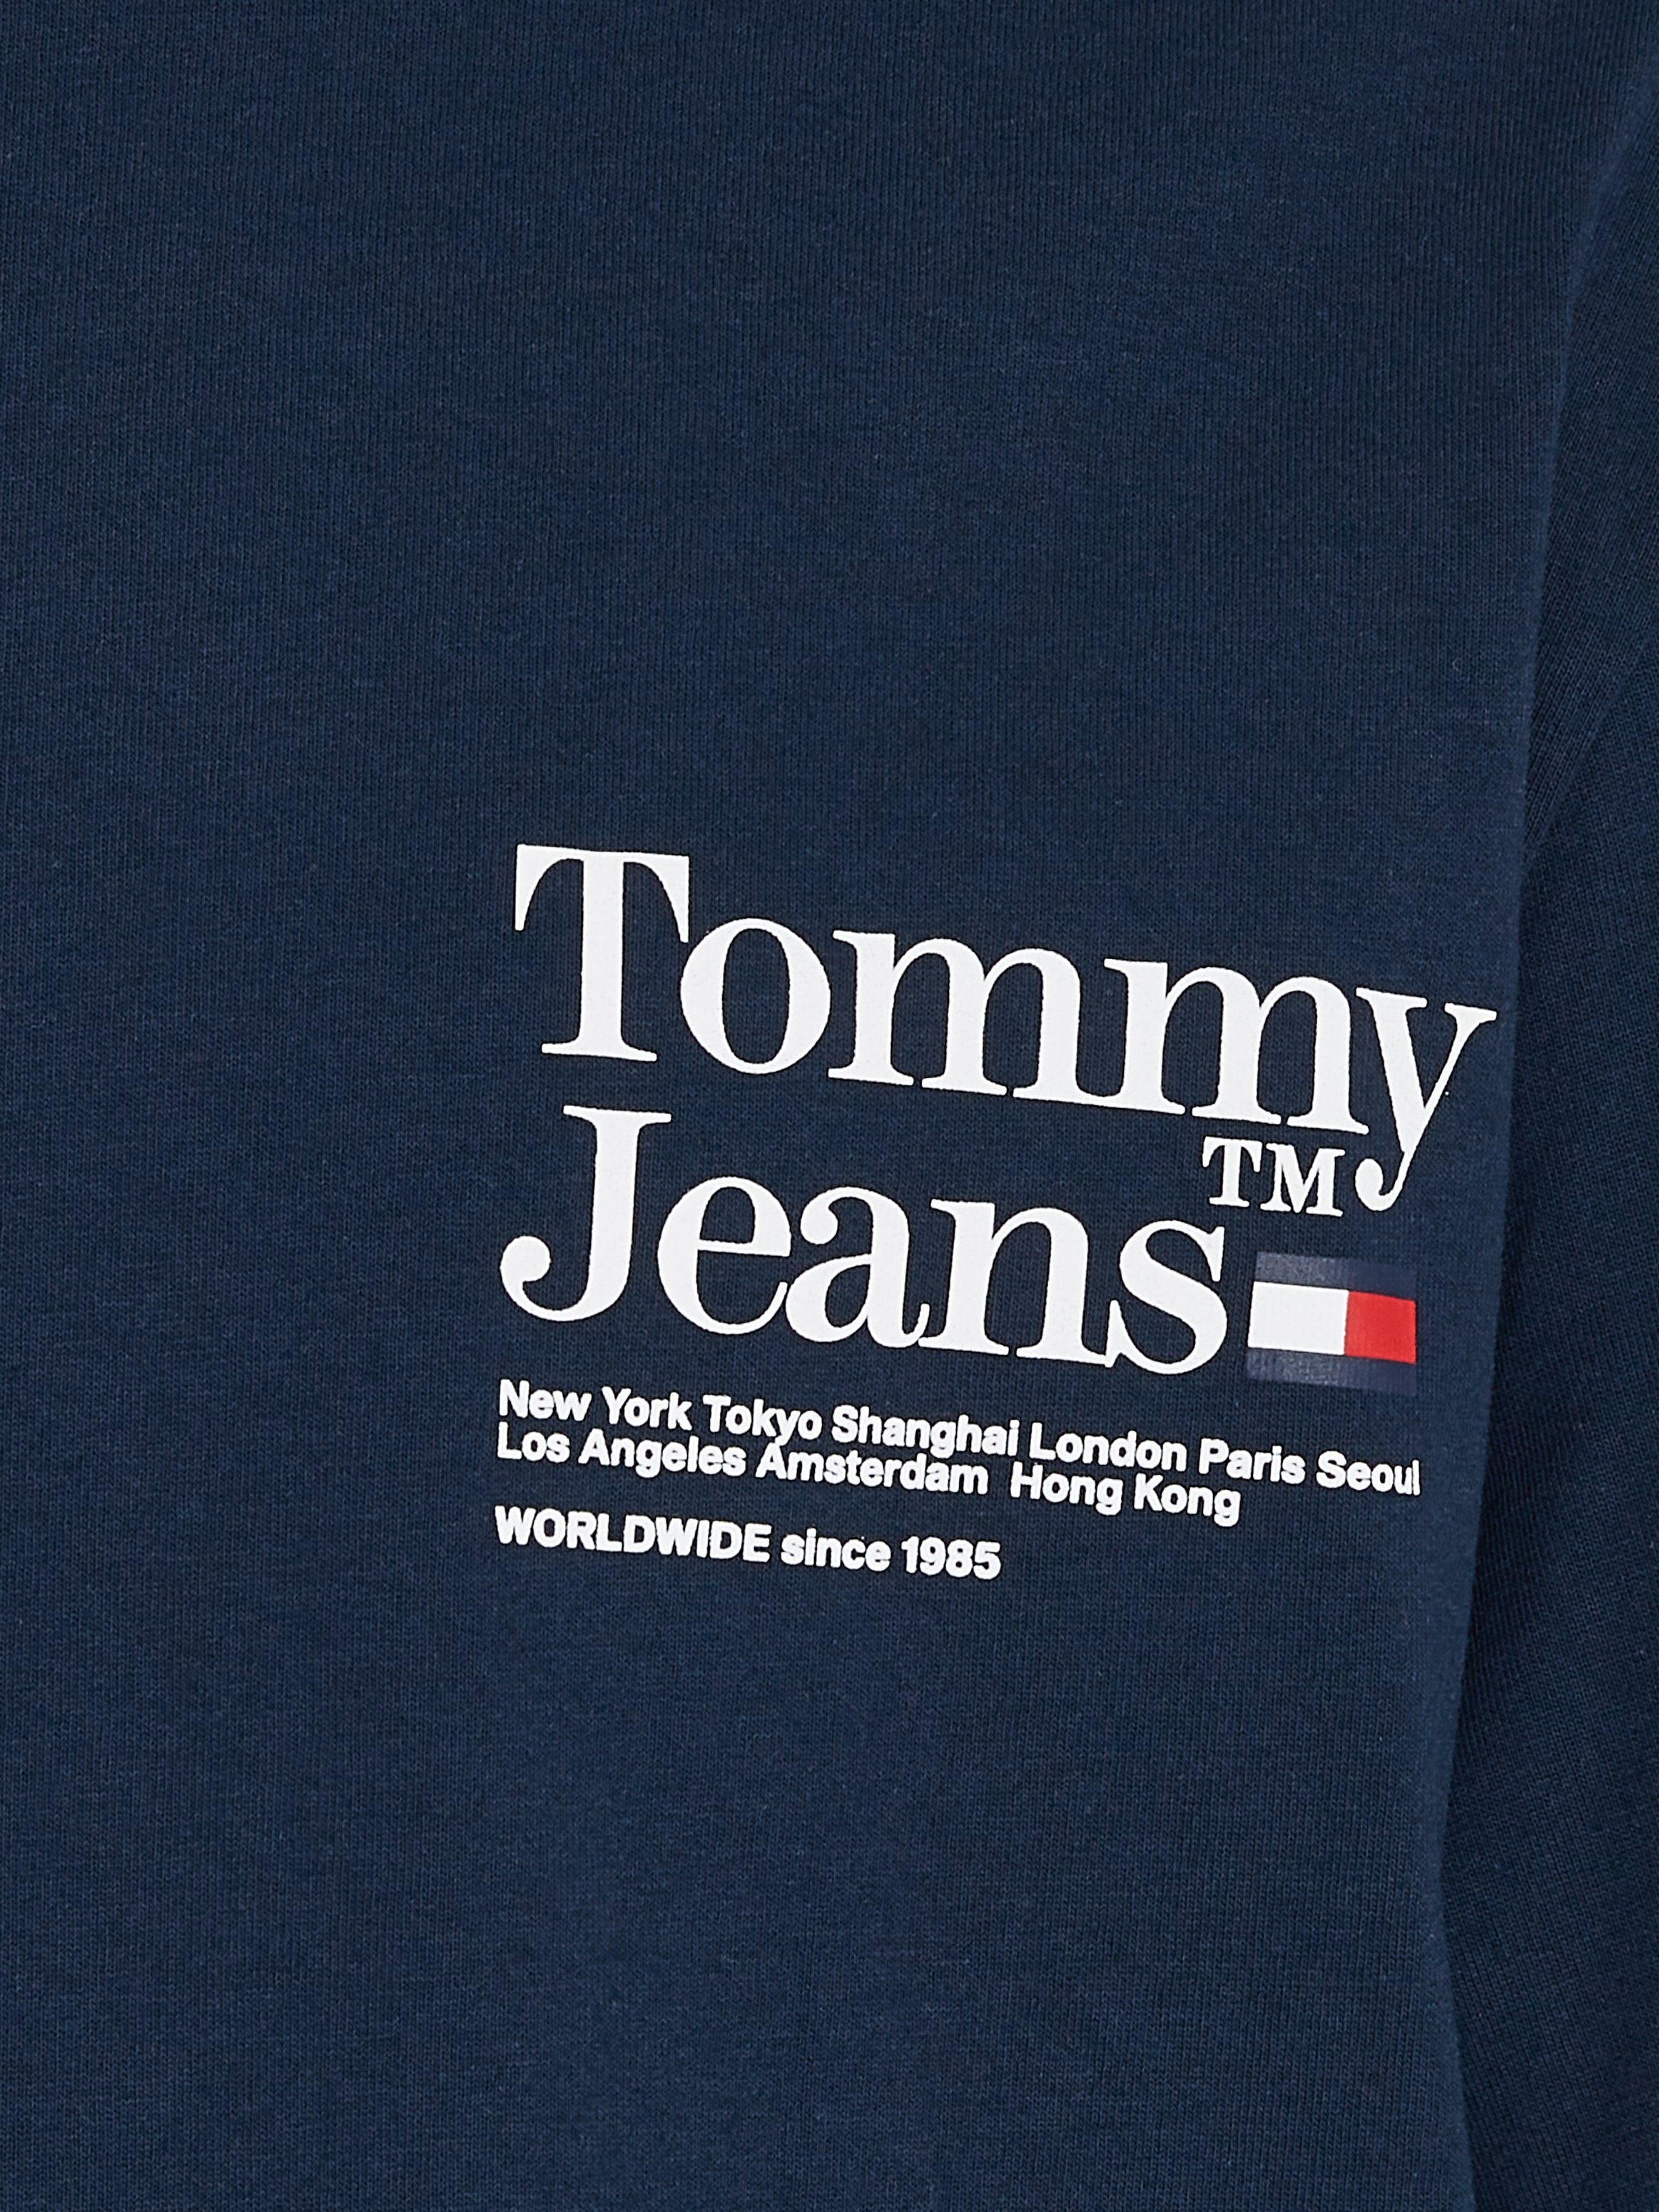 Aufdruck Night REG Jeans großem Navy mit TJM T-Shirt Dark TEE auf dem TM Rücken Tommy TOMMY MODERN